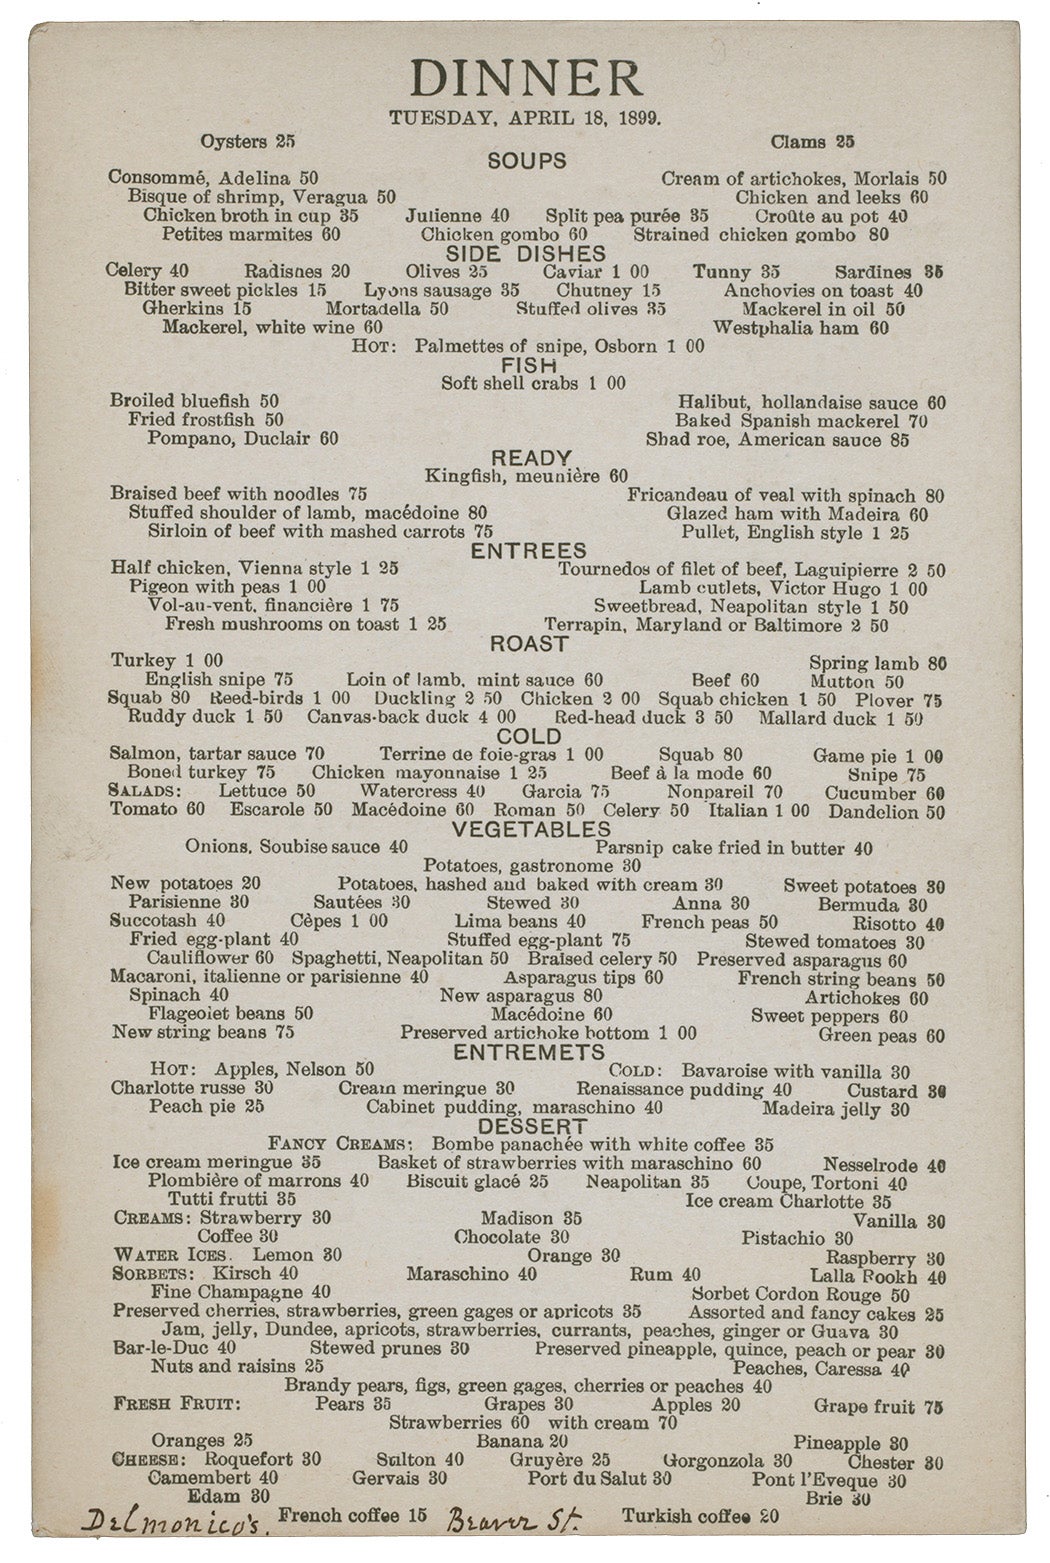 A menu from Delmonico's, 1899